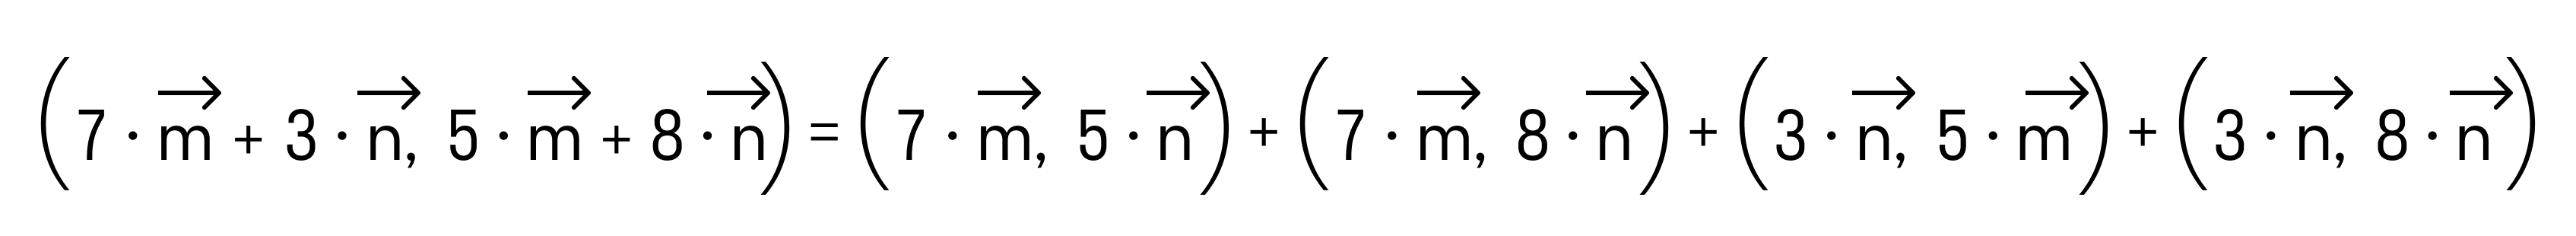 решение примера 3 рис 2